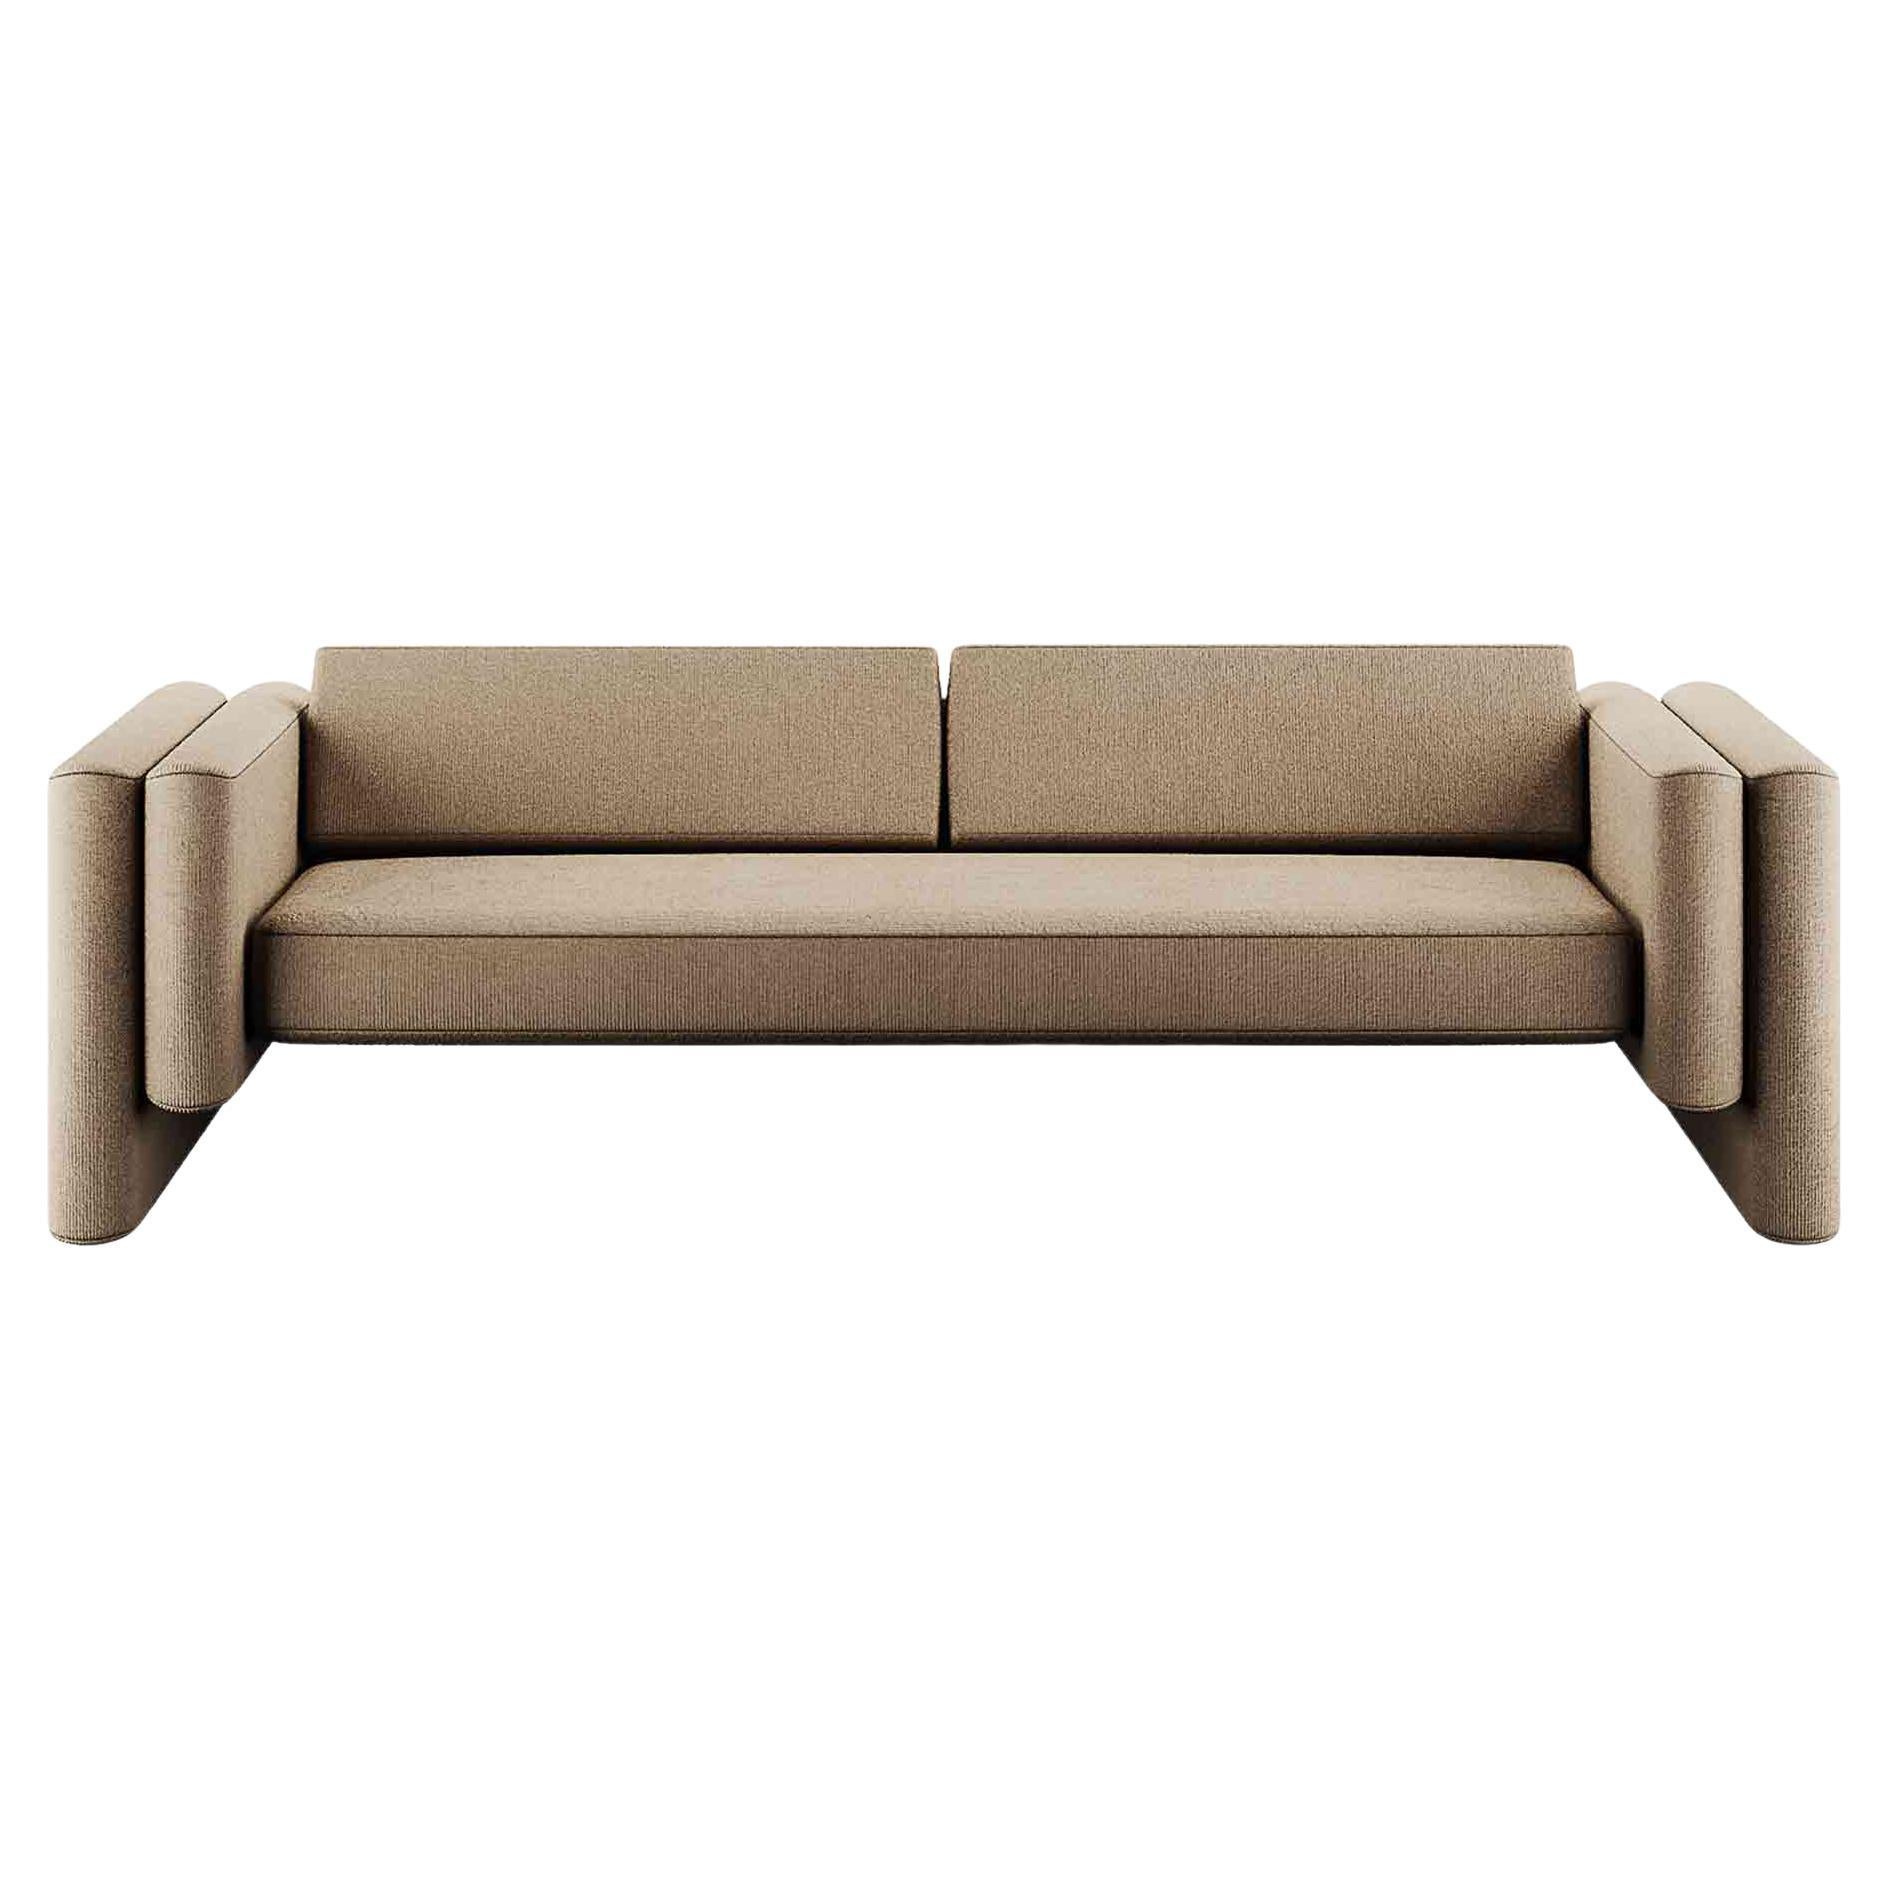 Modernes minimalistisches Sofa mit klaren Linien und beigefarbener Kordpolsterung